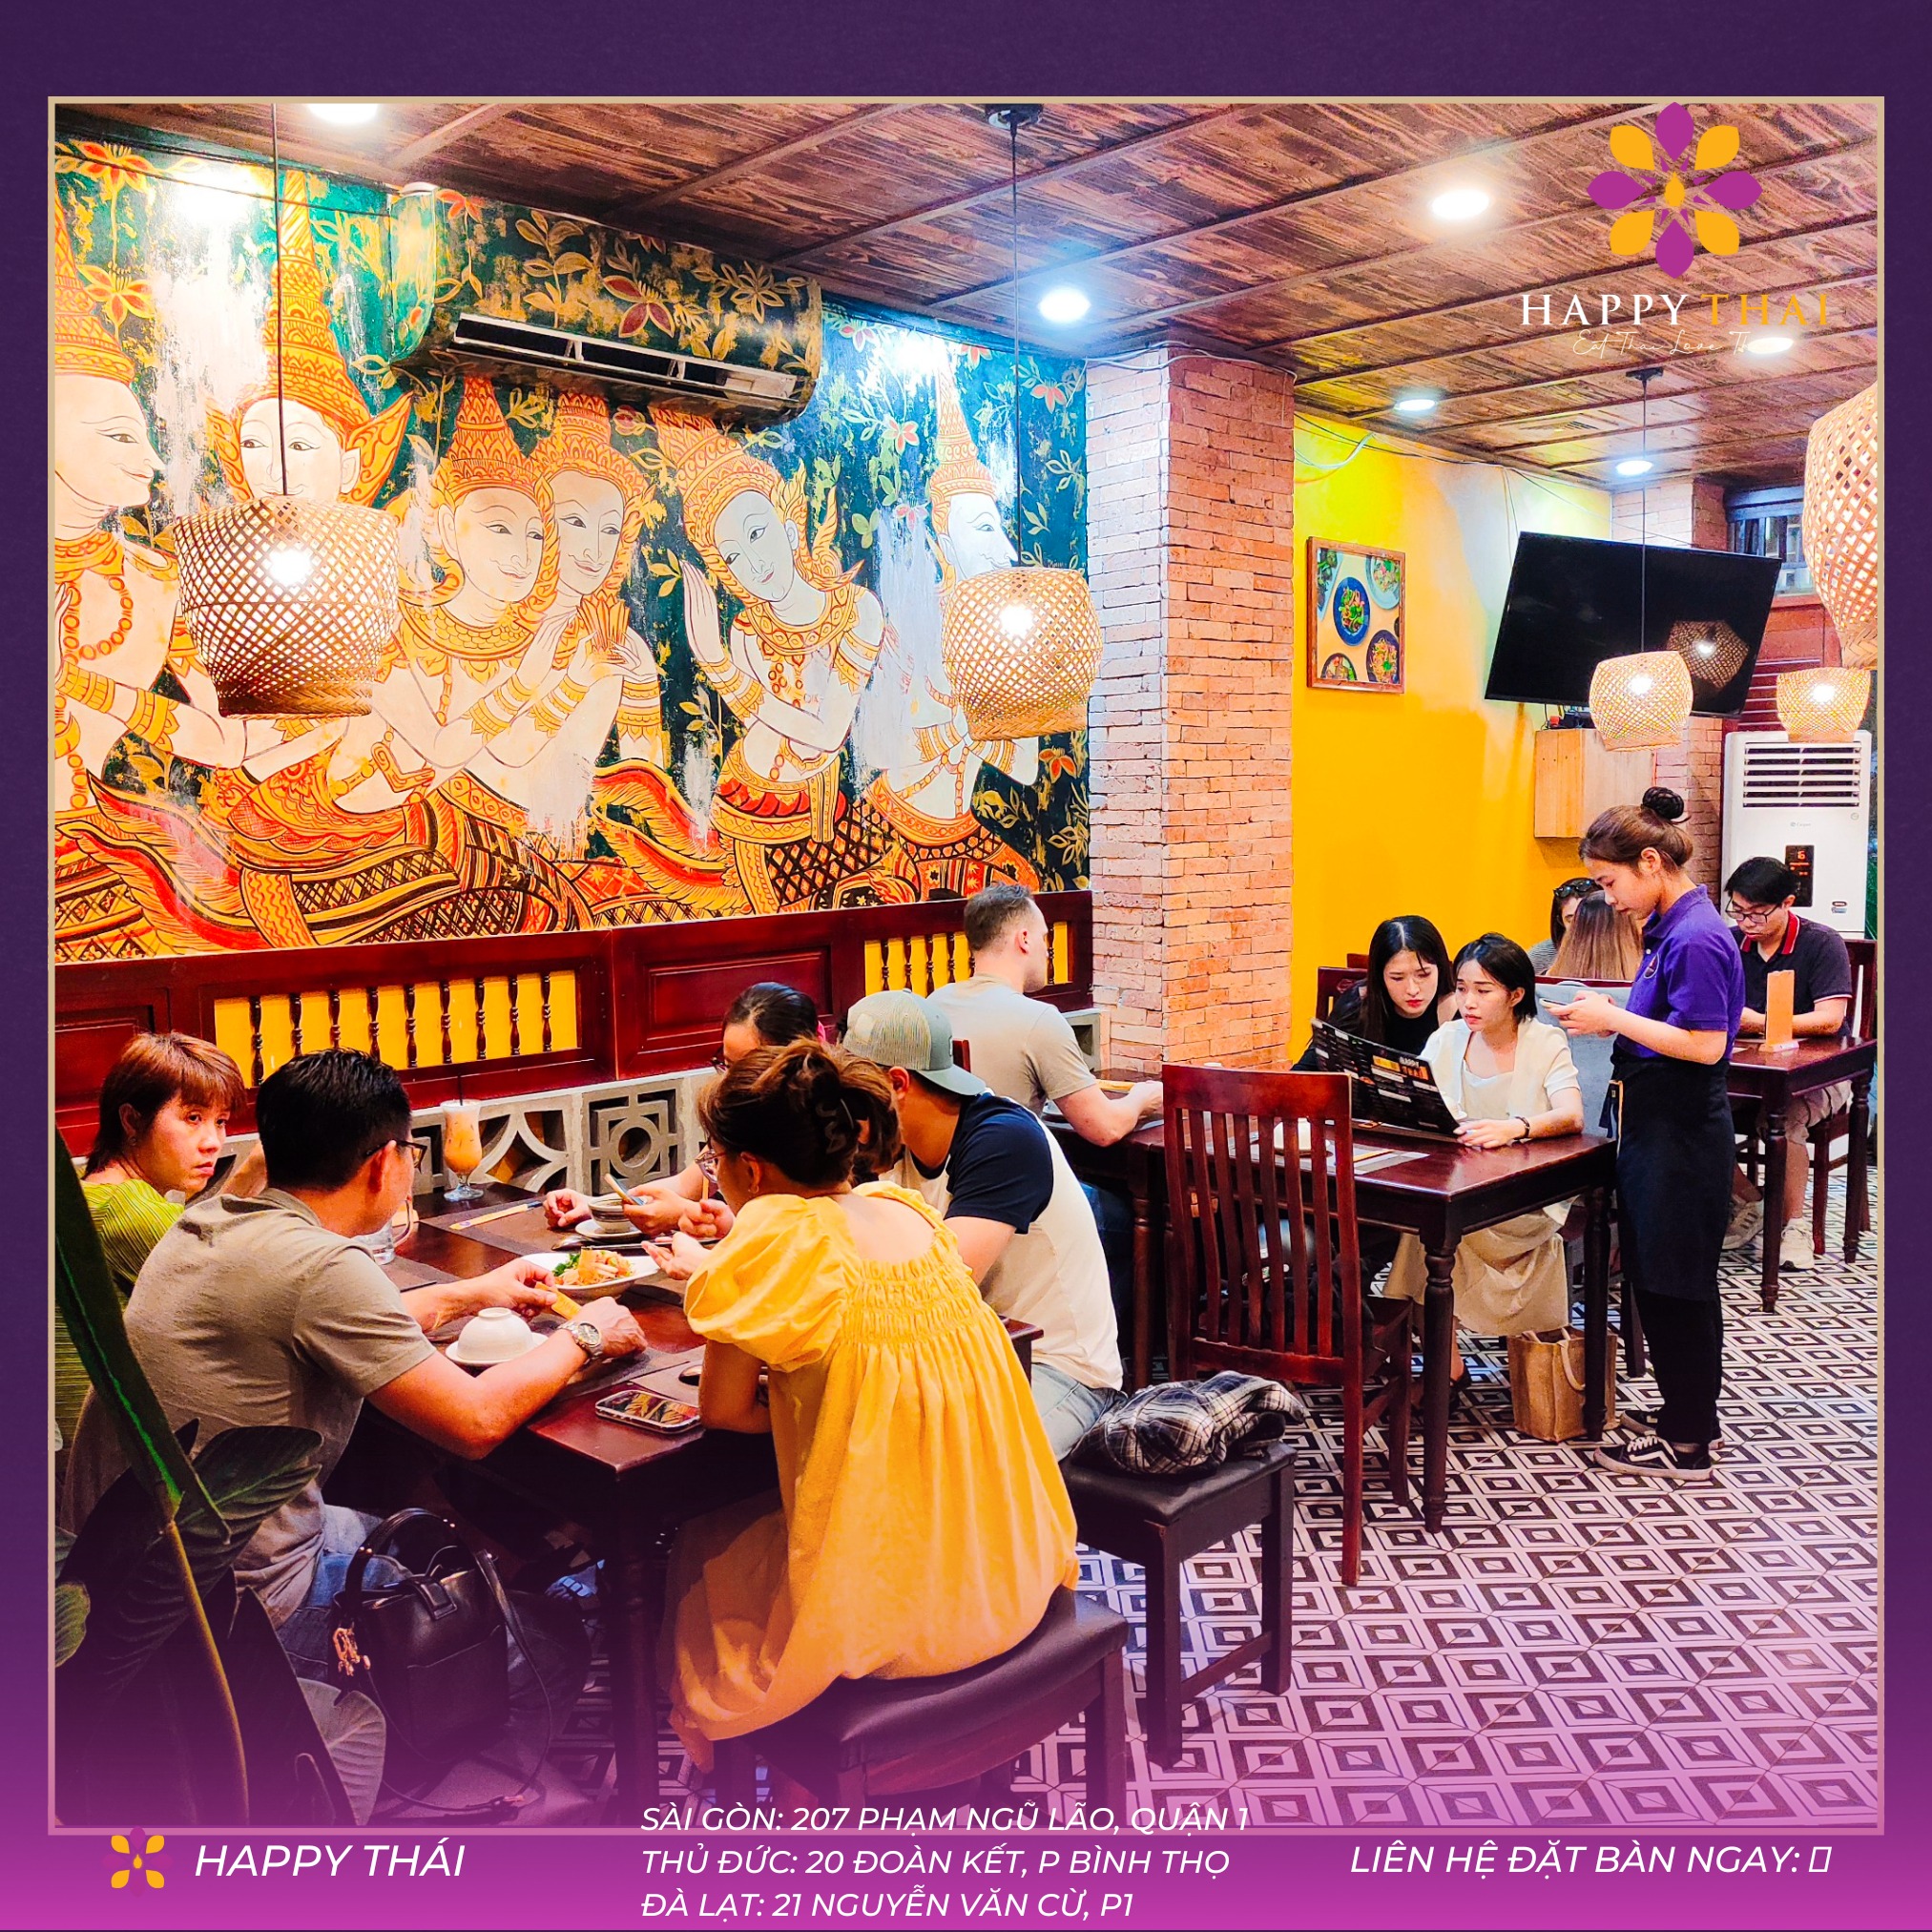 Đơn vị nhà hàng HAPPY THÁI tại Tp Hồ Chí Minh